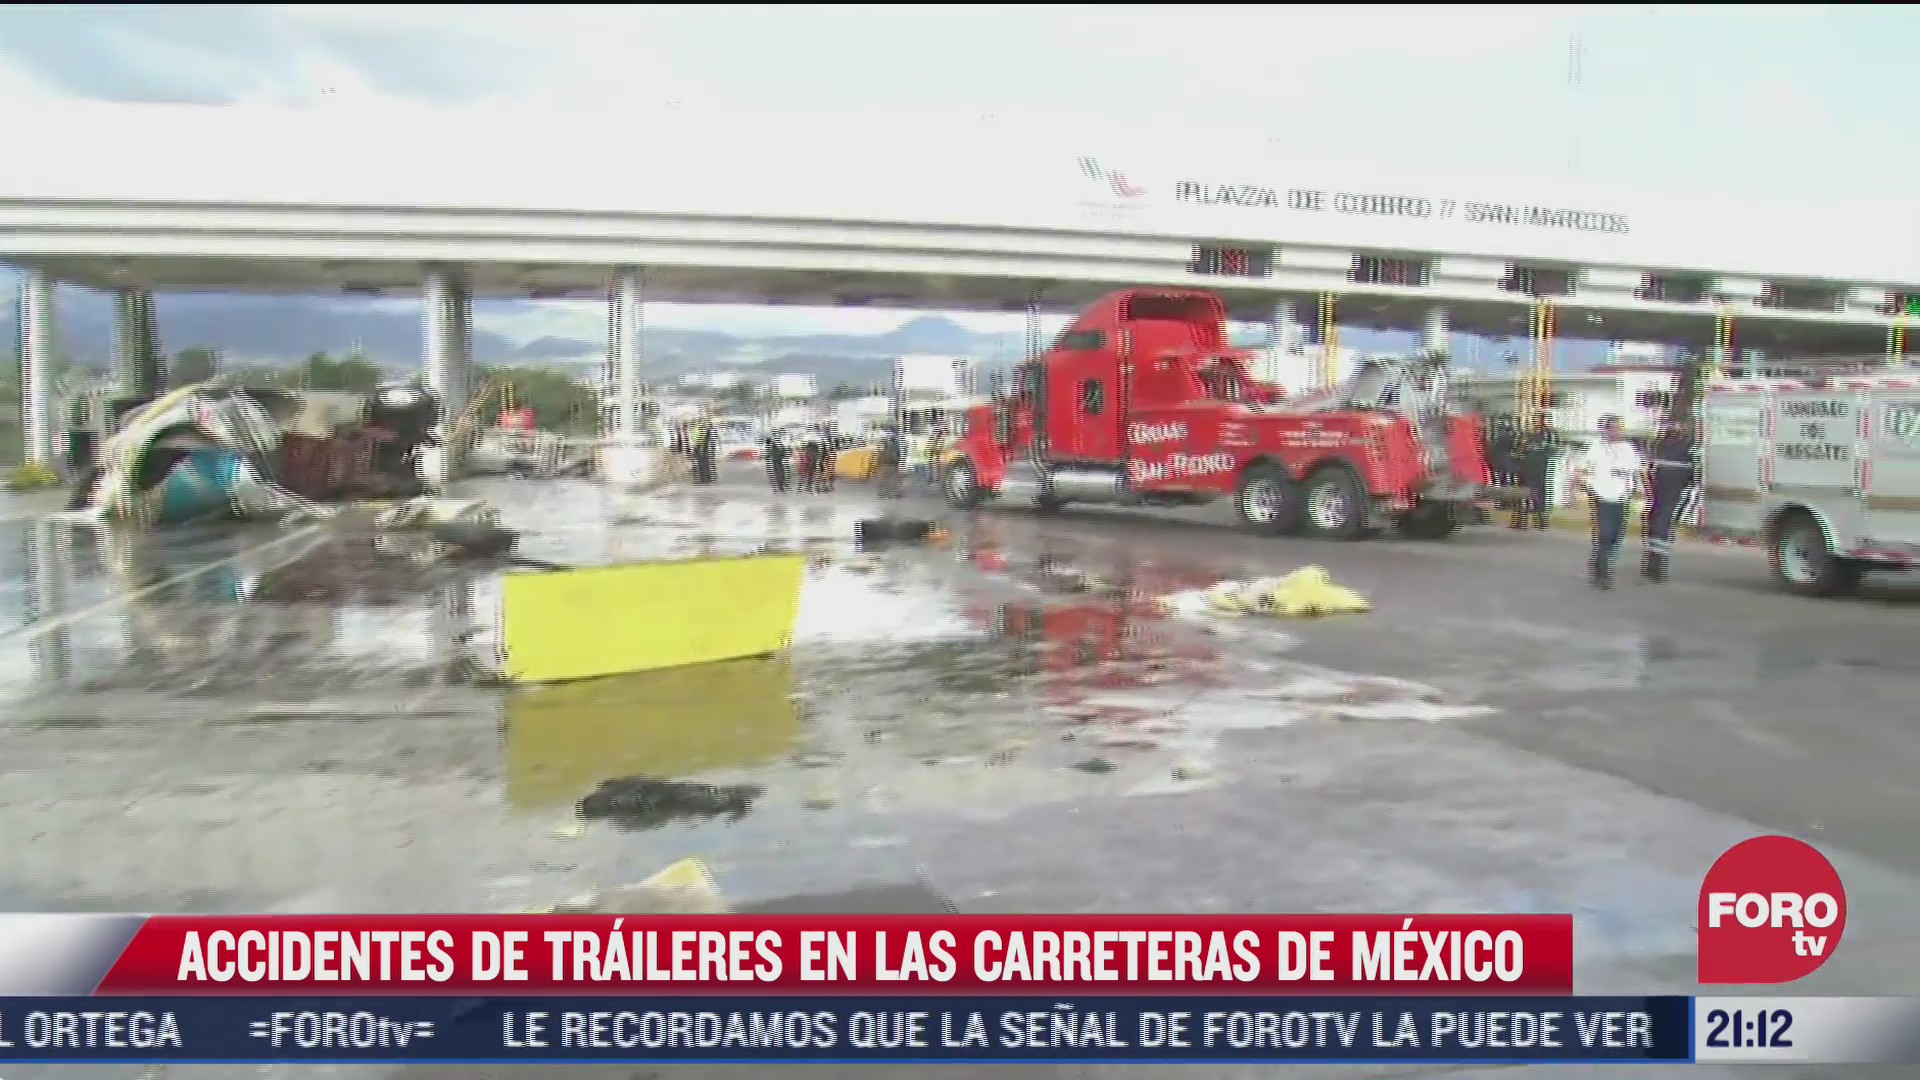 video recuento de los fatales accidentes de transito provocados por traileres en mexico